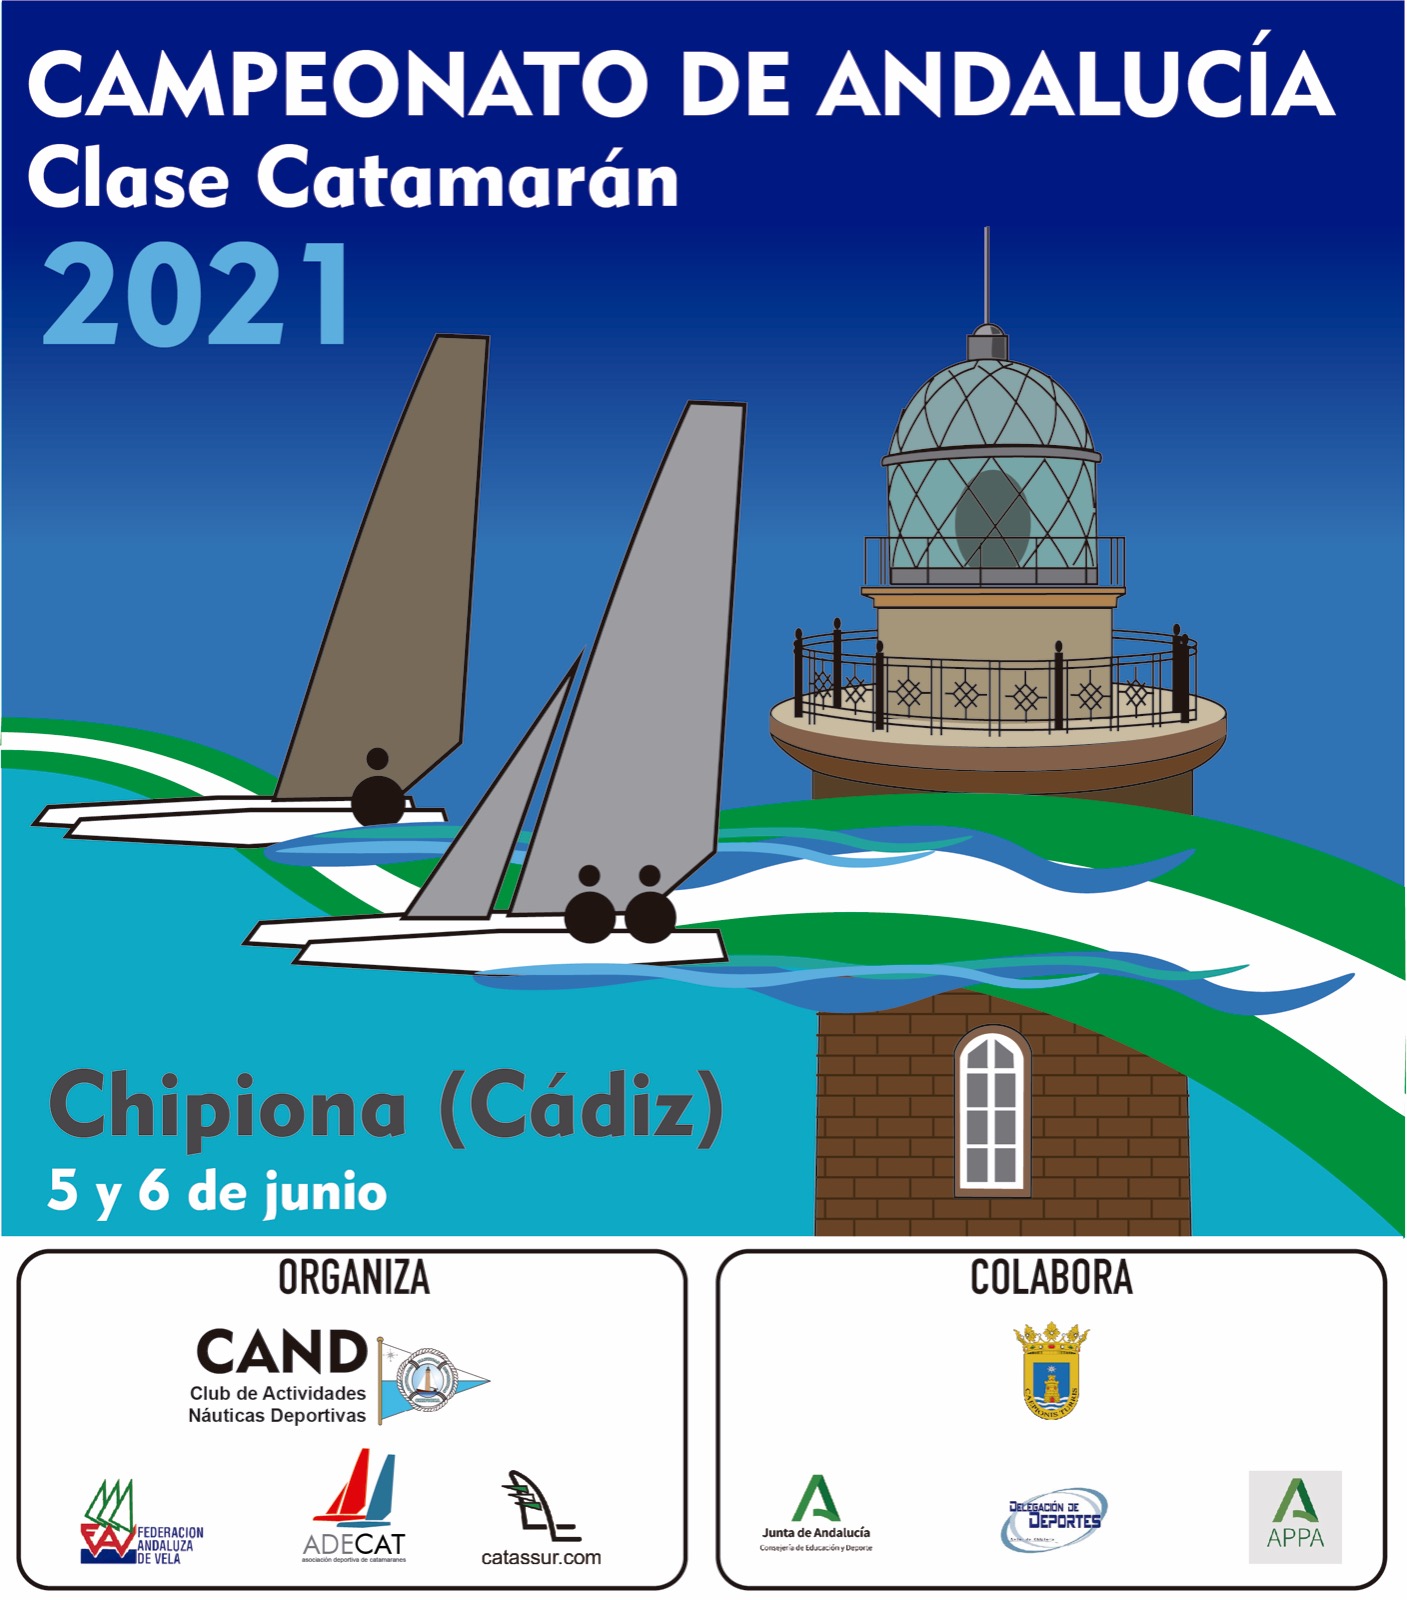 Campeonato De Andalucía De Catamarán